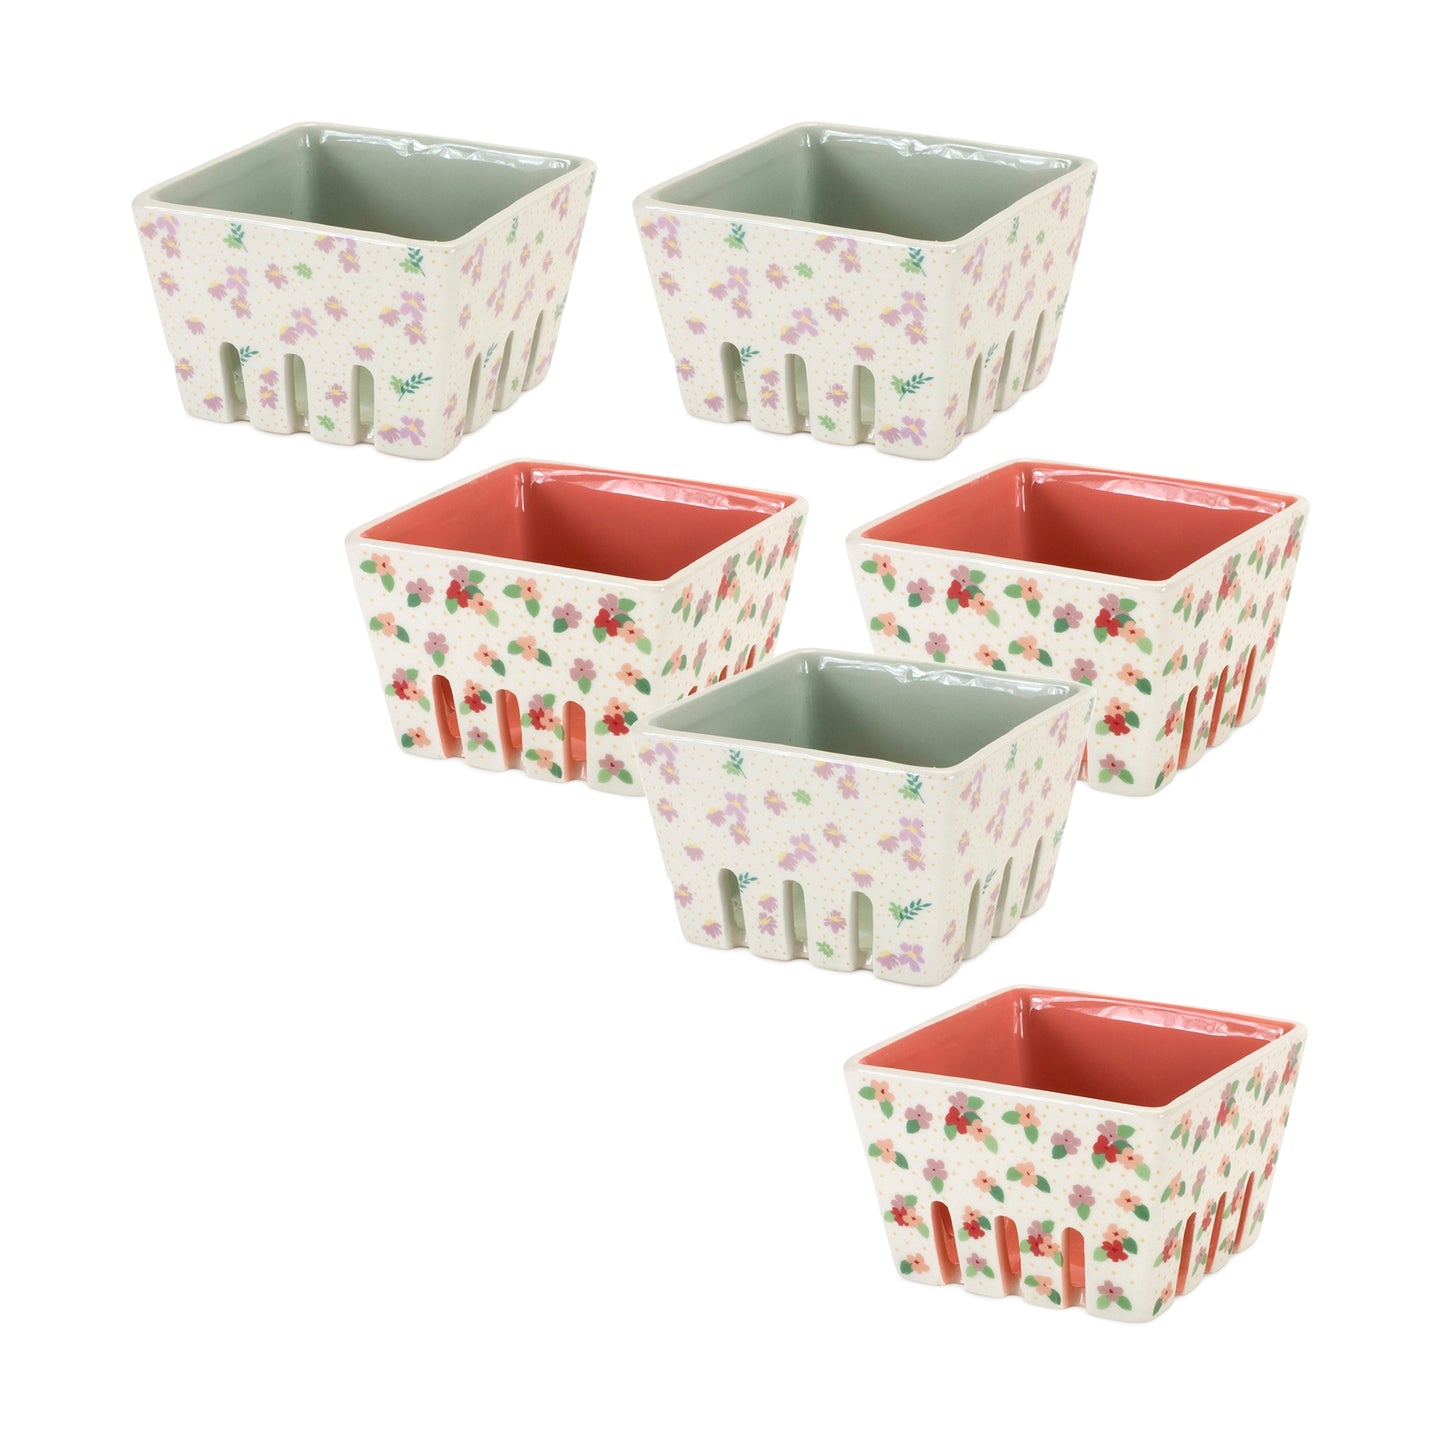 Berry Container (Set of 6) 4.25"L x 3"H Ceramic